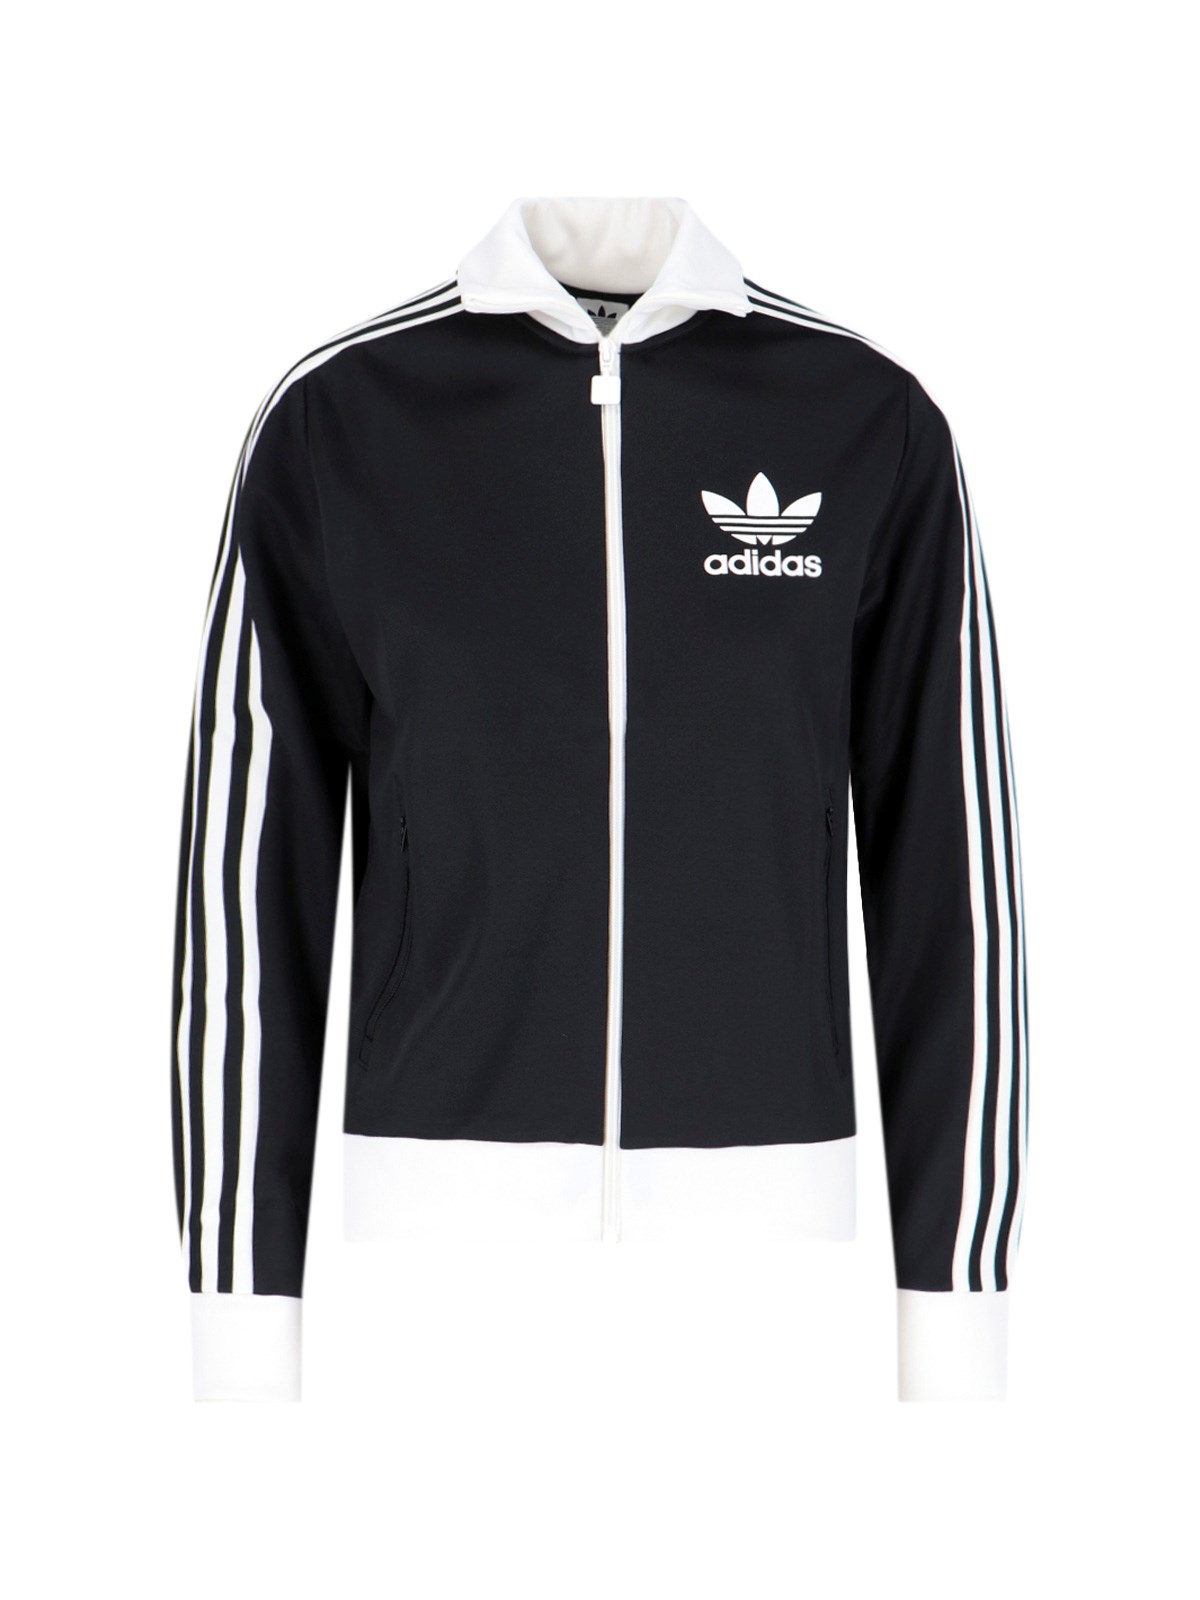 Adidas Originals 'beckenbauer' Sporty Sweatshirt In Black  